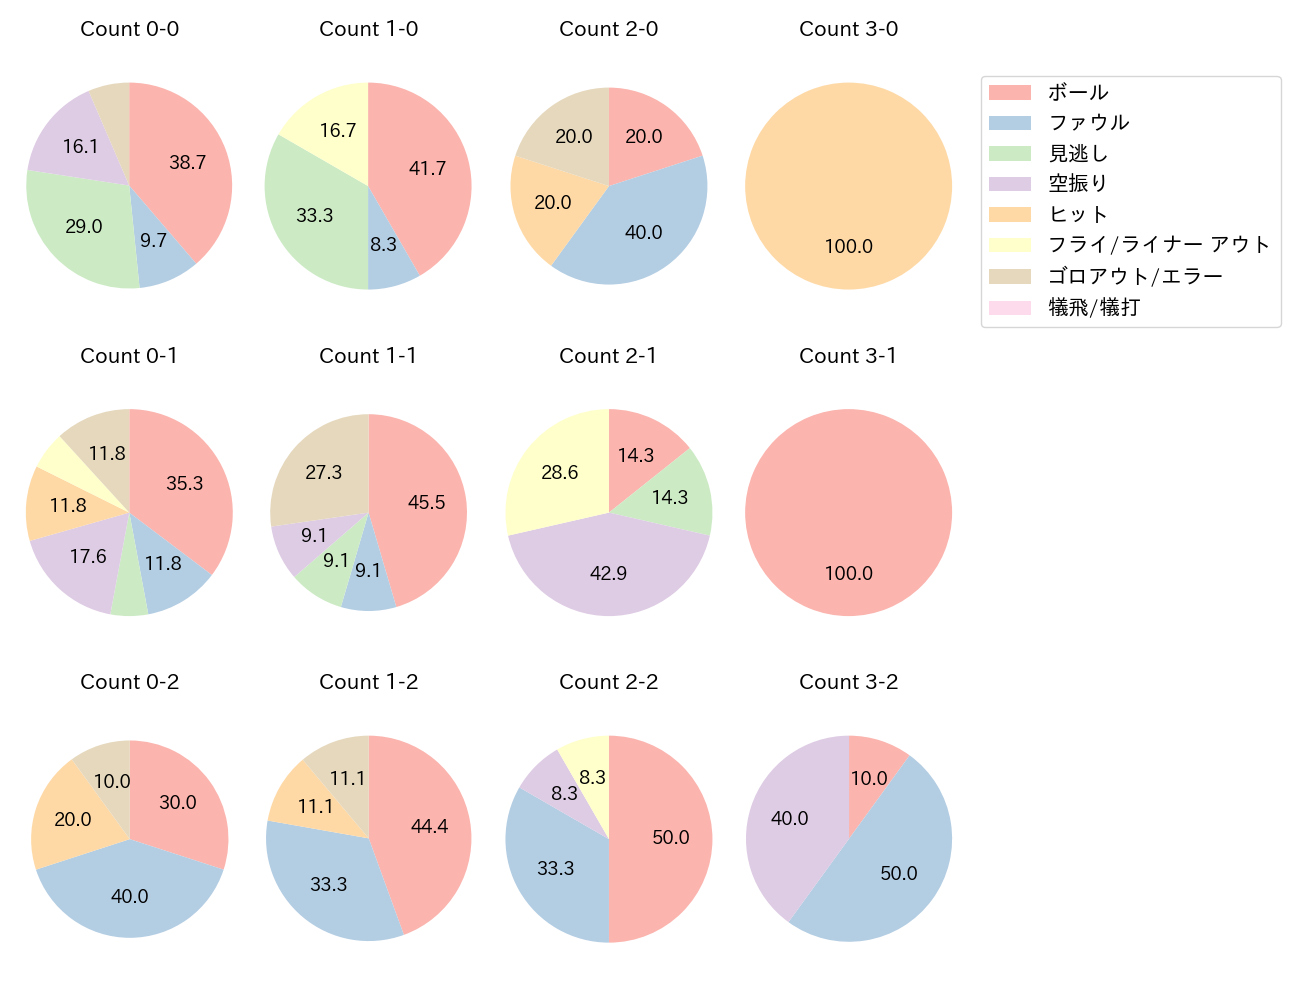 廣岡 大志の球数分布(2021年4月)